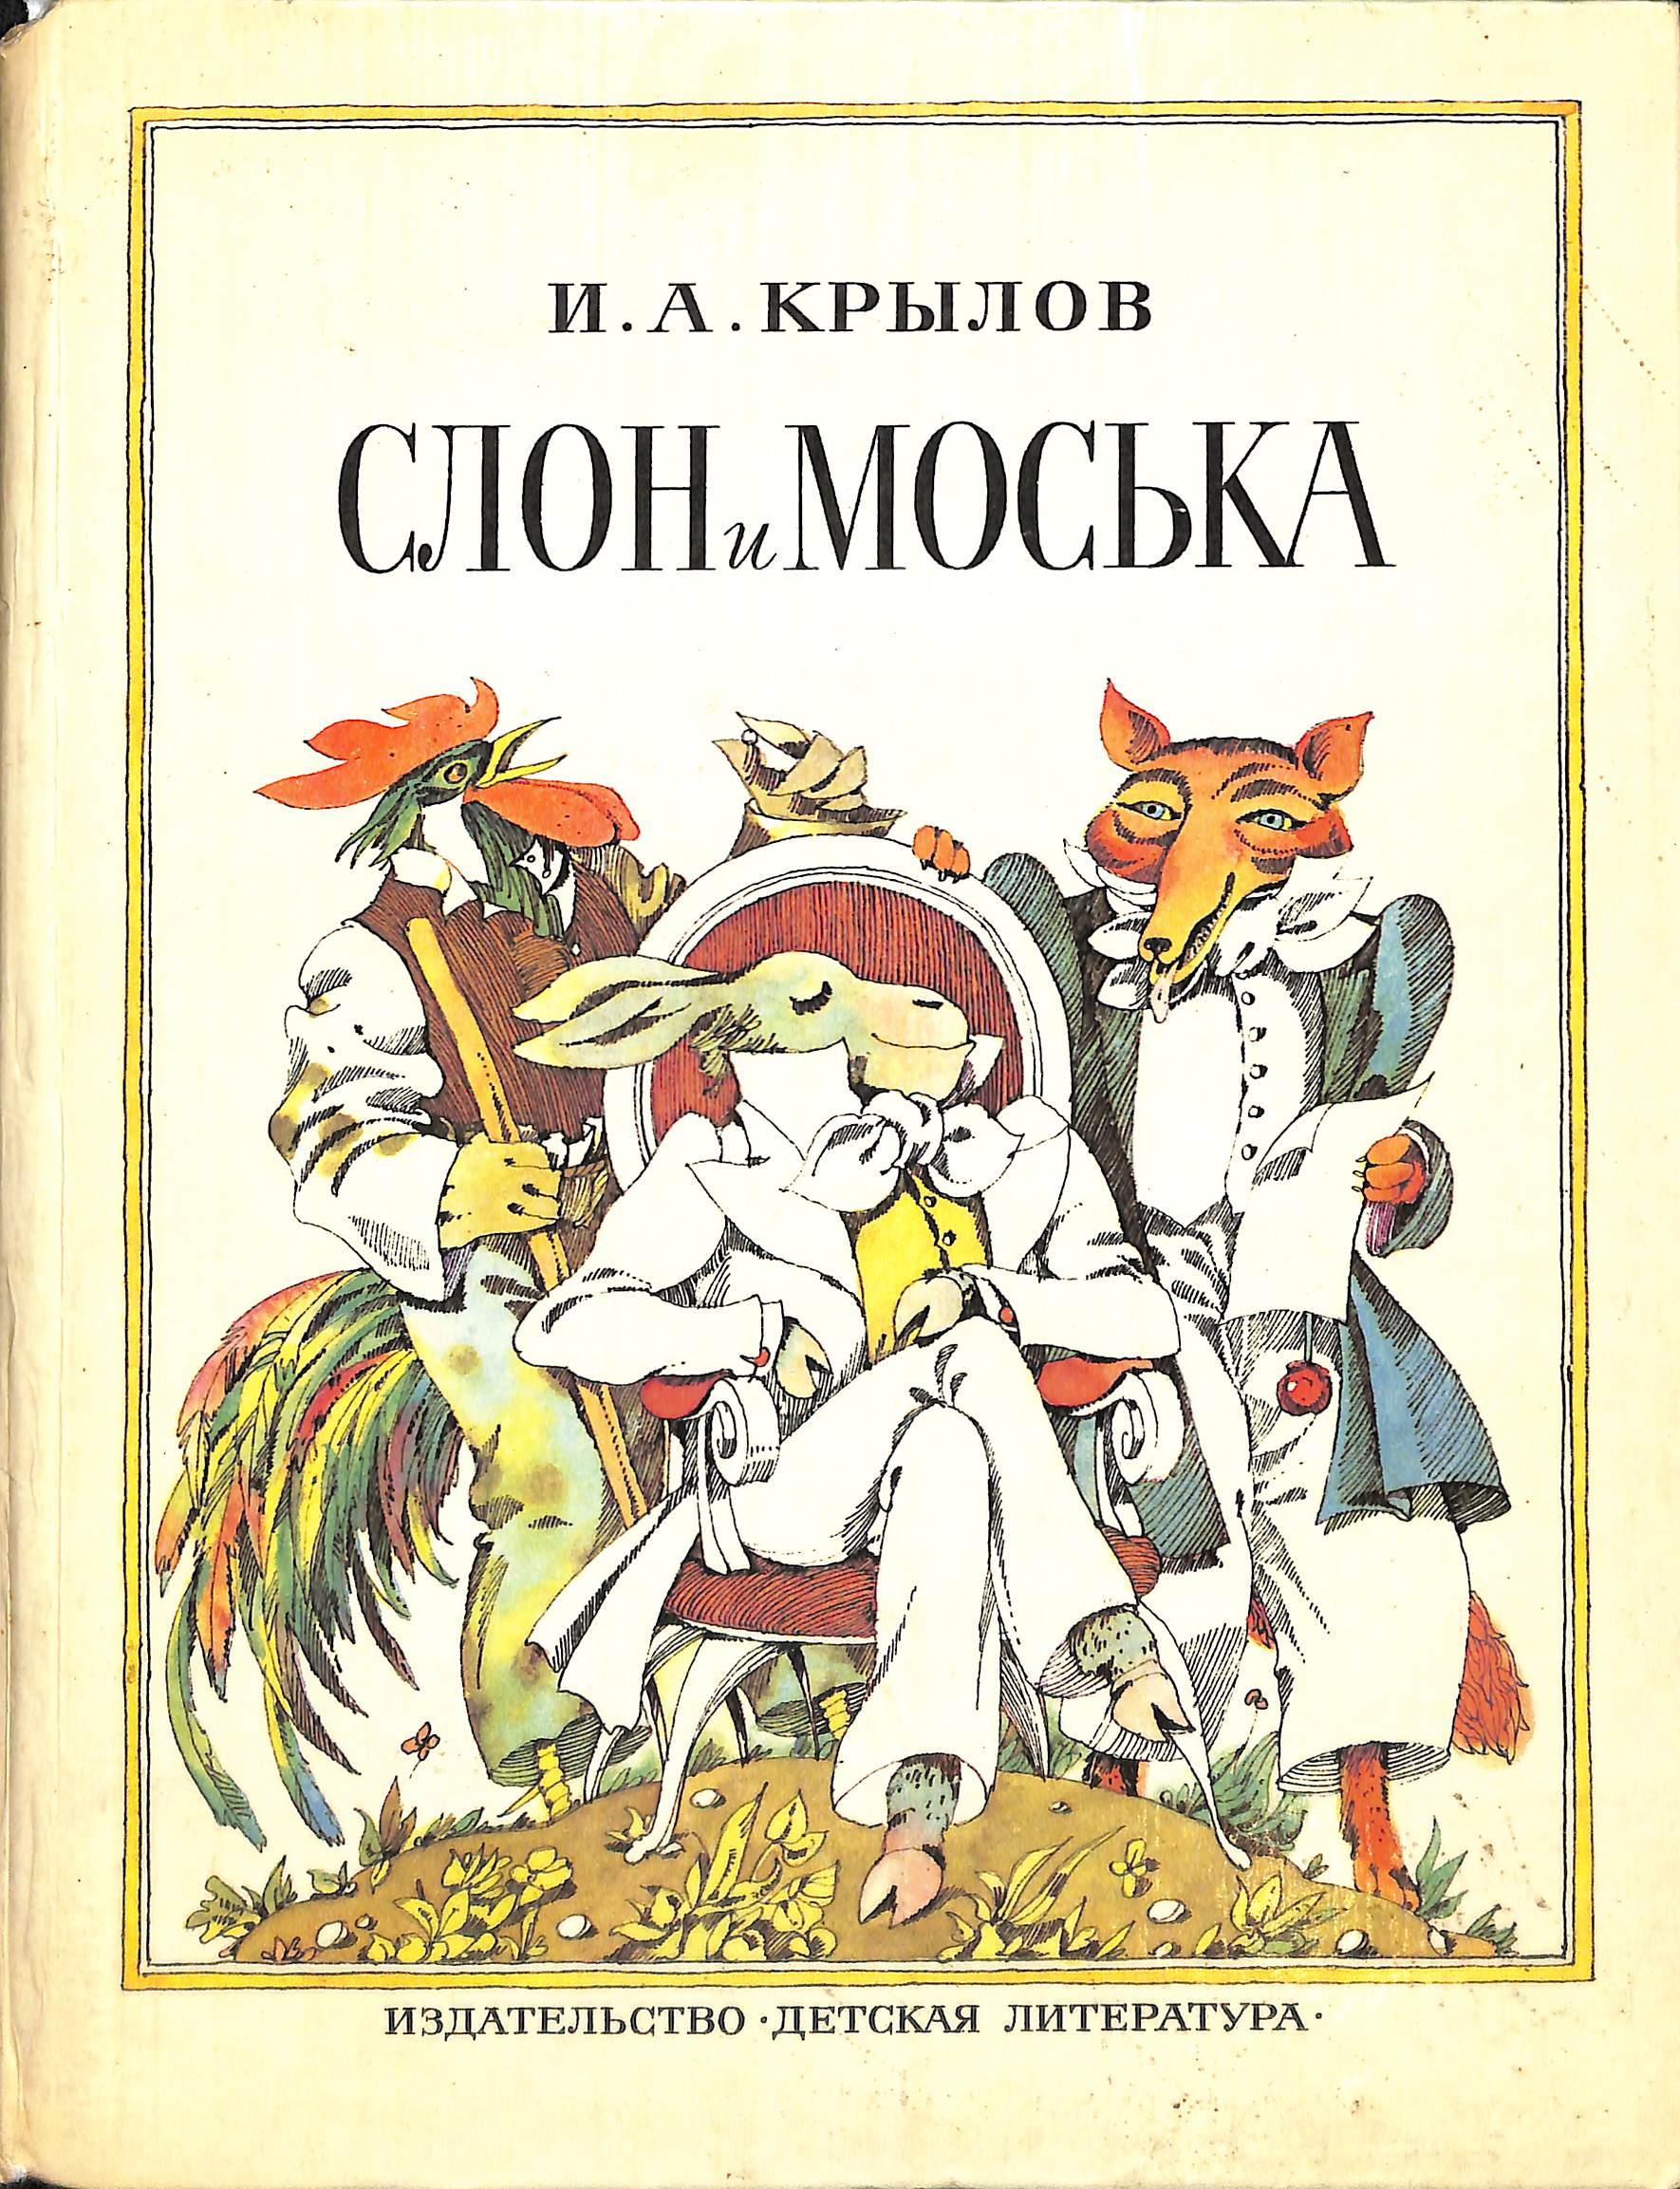 Моська крылова читать. Крылов слон и моська книга. Книга, Крылов слон и моська, 1983. Басня Крылова слон и моська.